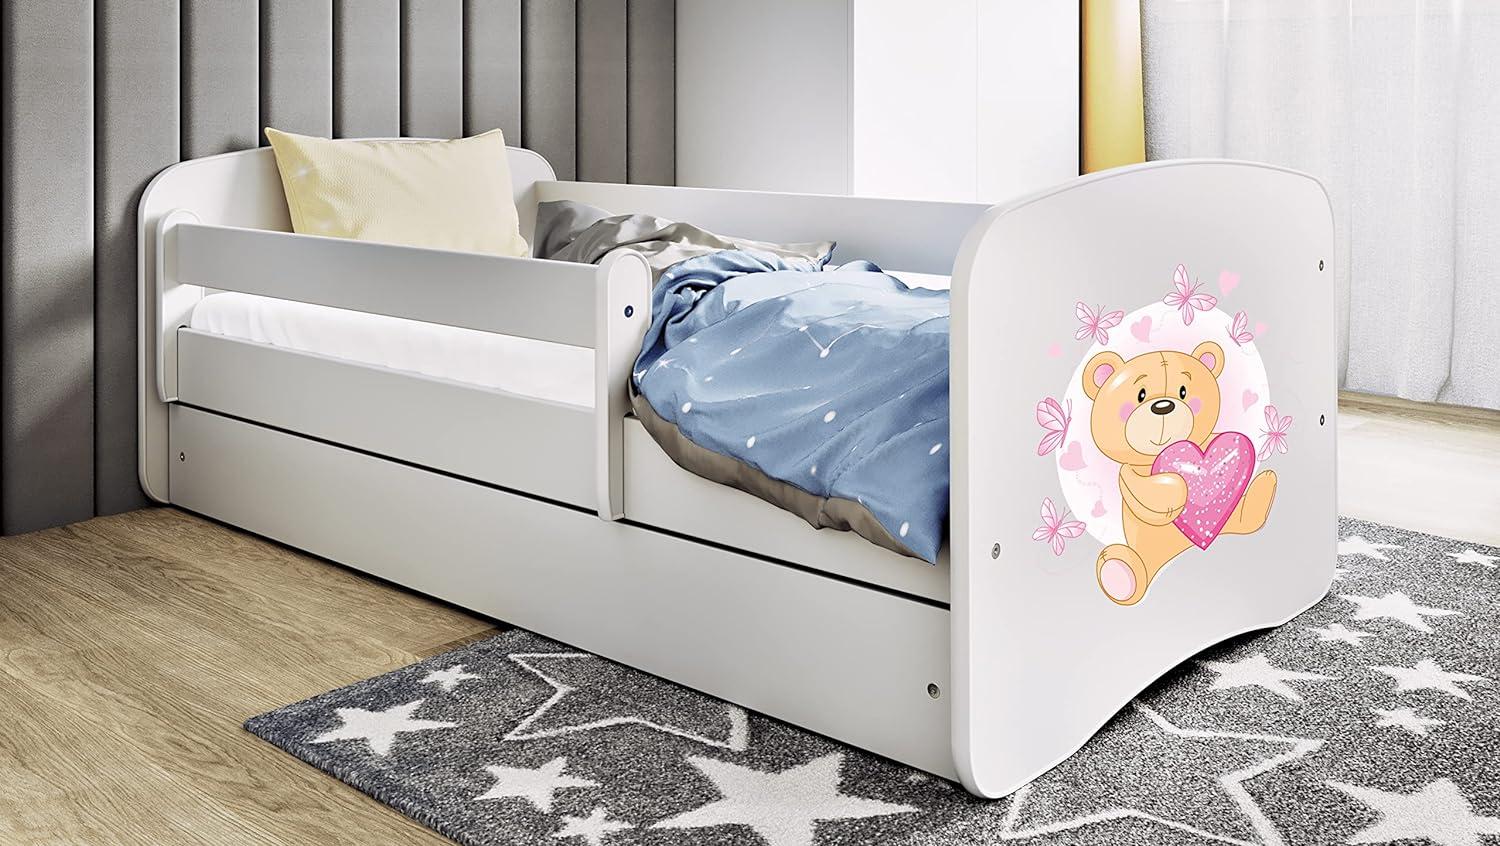 Kocot Kids 'teddybär mit Schmetterlingen' Einzelbett weiß 80x180 cm inkl. Rausfallschutz, Matratze, Schublade und Lattenrost Bild 1